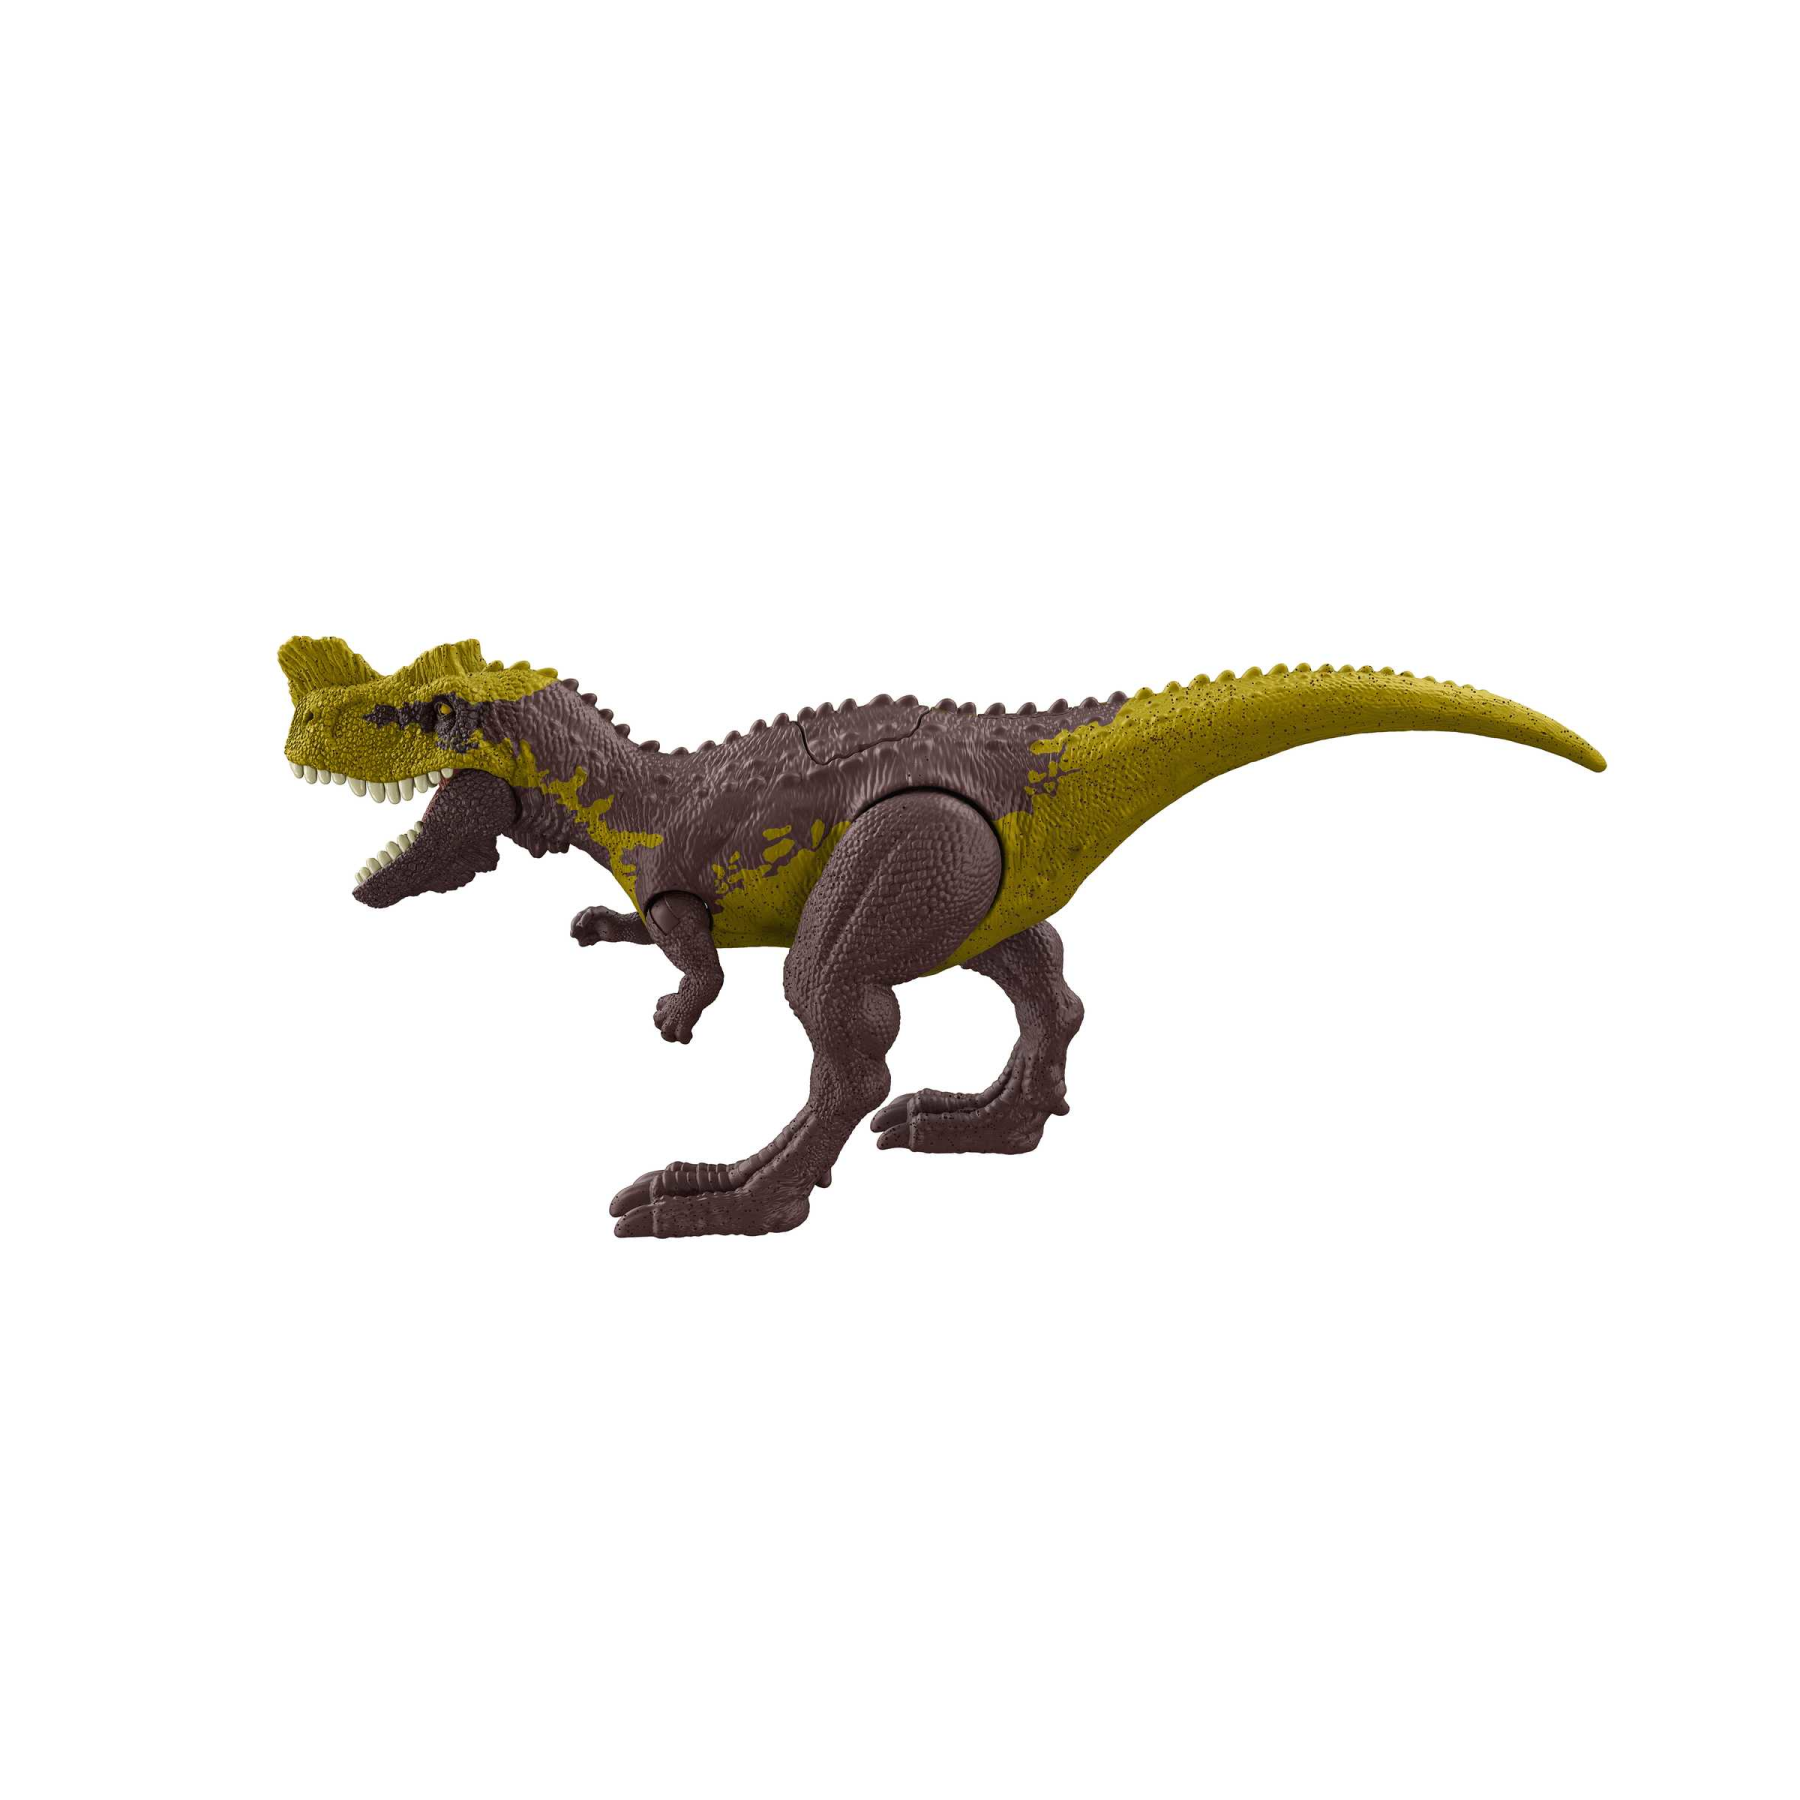 Jurassic world attacco fatale - genyodectes serus, dinosauro con articolazioni mobili e azione d'attacco specifica, giocattolo per bambini, 4+ anni, hln65 - Jurassic World